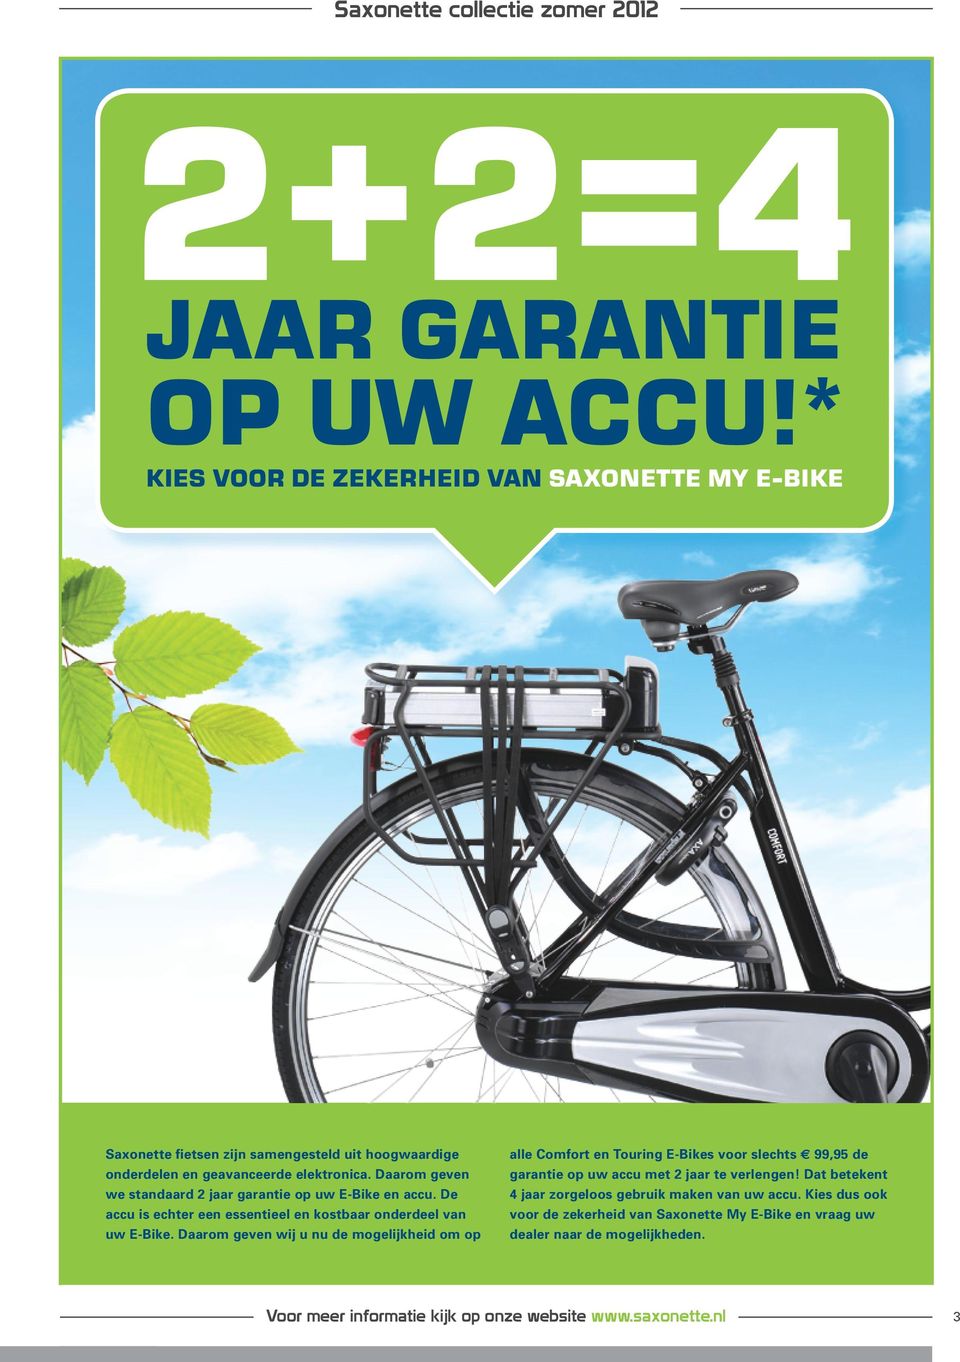 Daarom geven we standaard 2 jaar garantie op uw E-Bike en accu. De accu is echter een essentieel en kostbaar onderdeel van uw E-Bike.